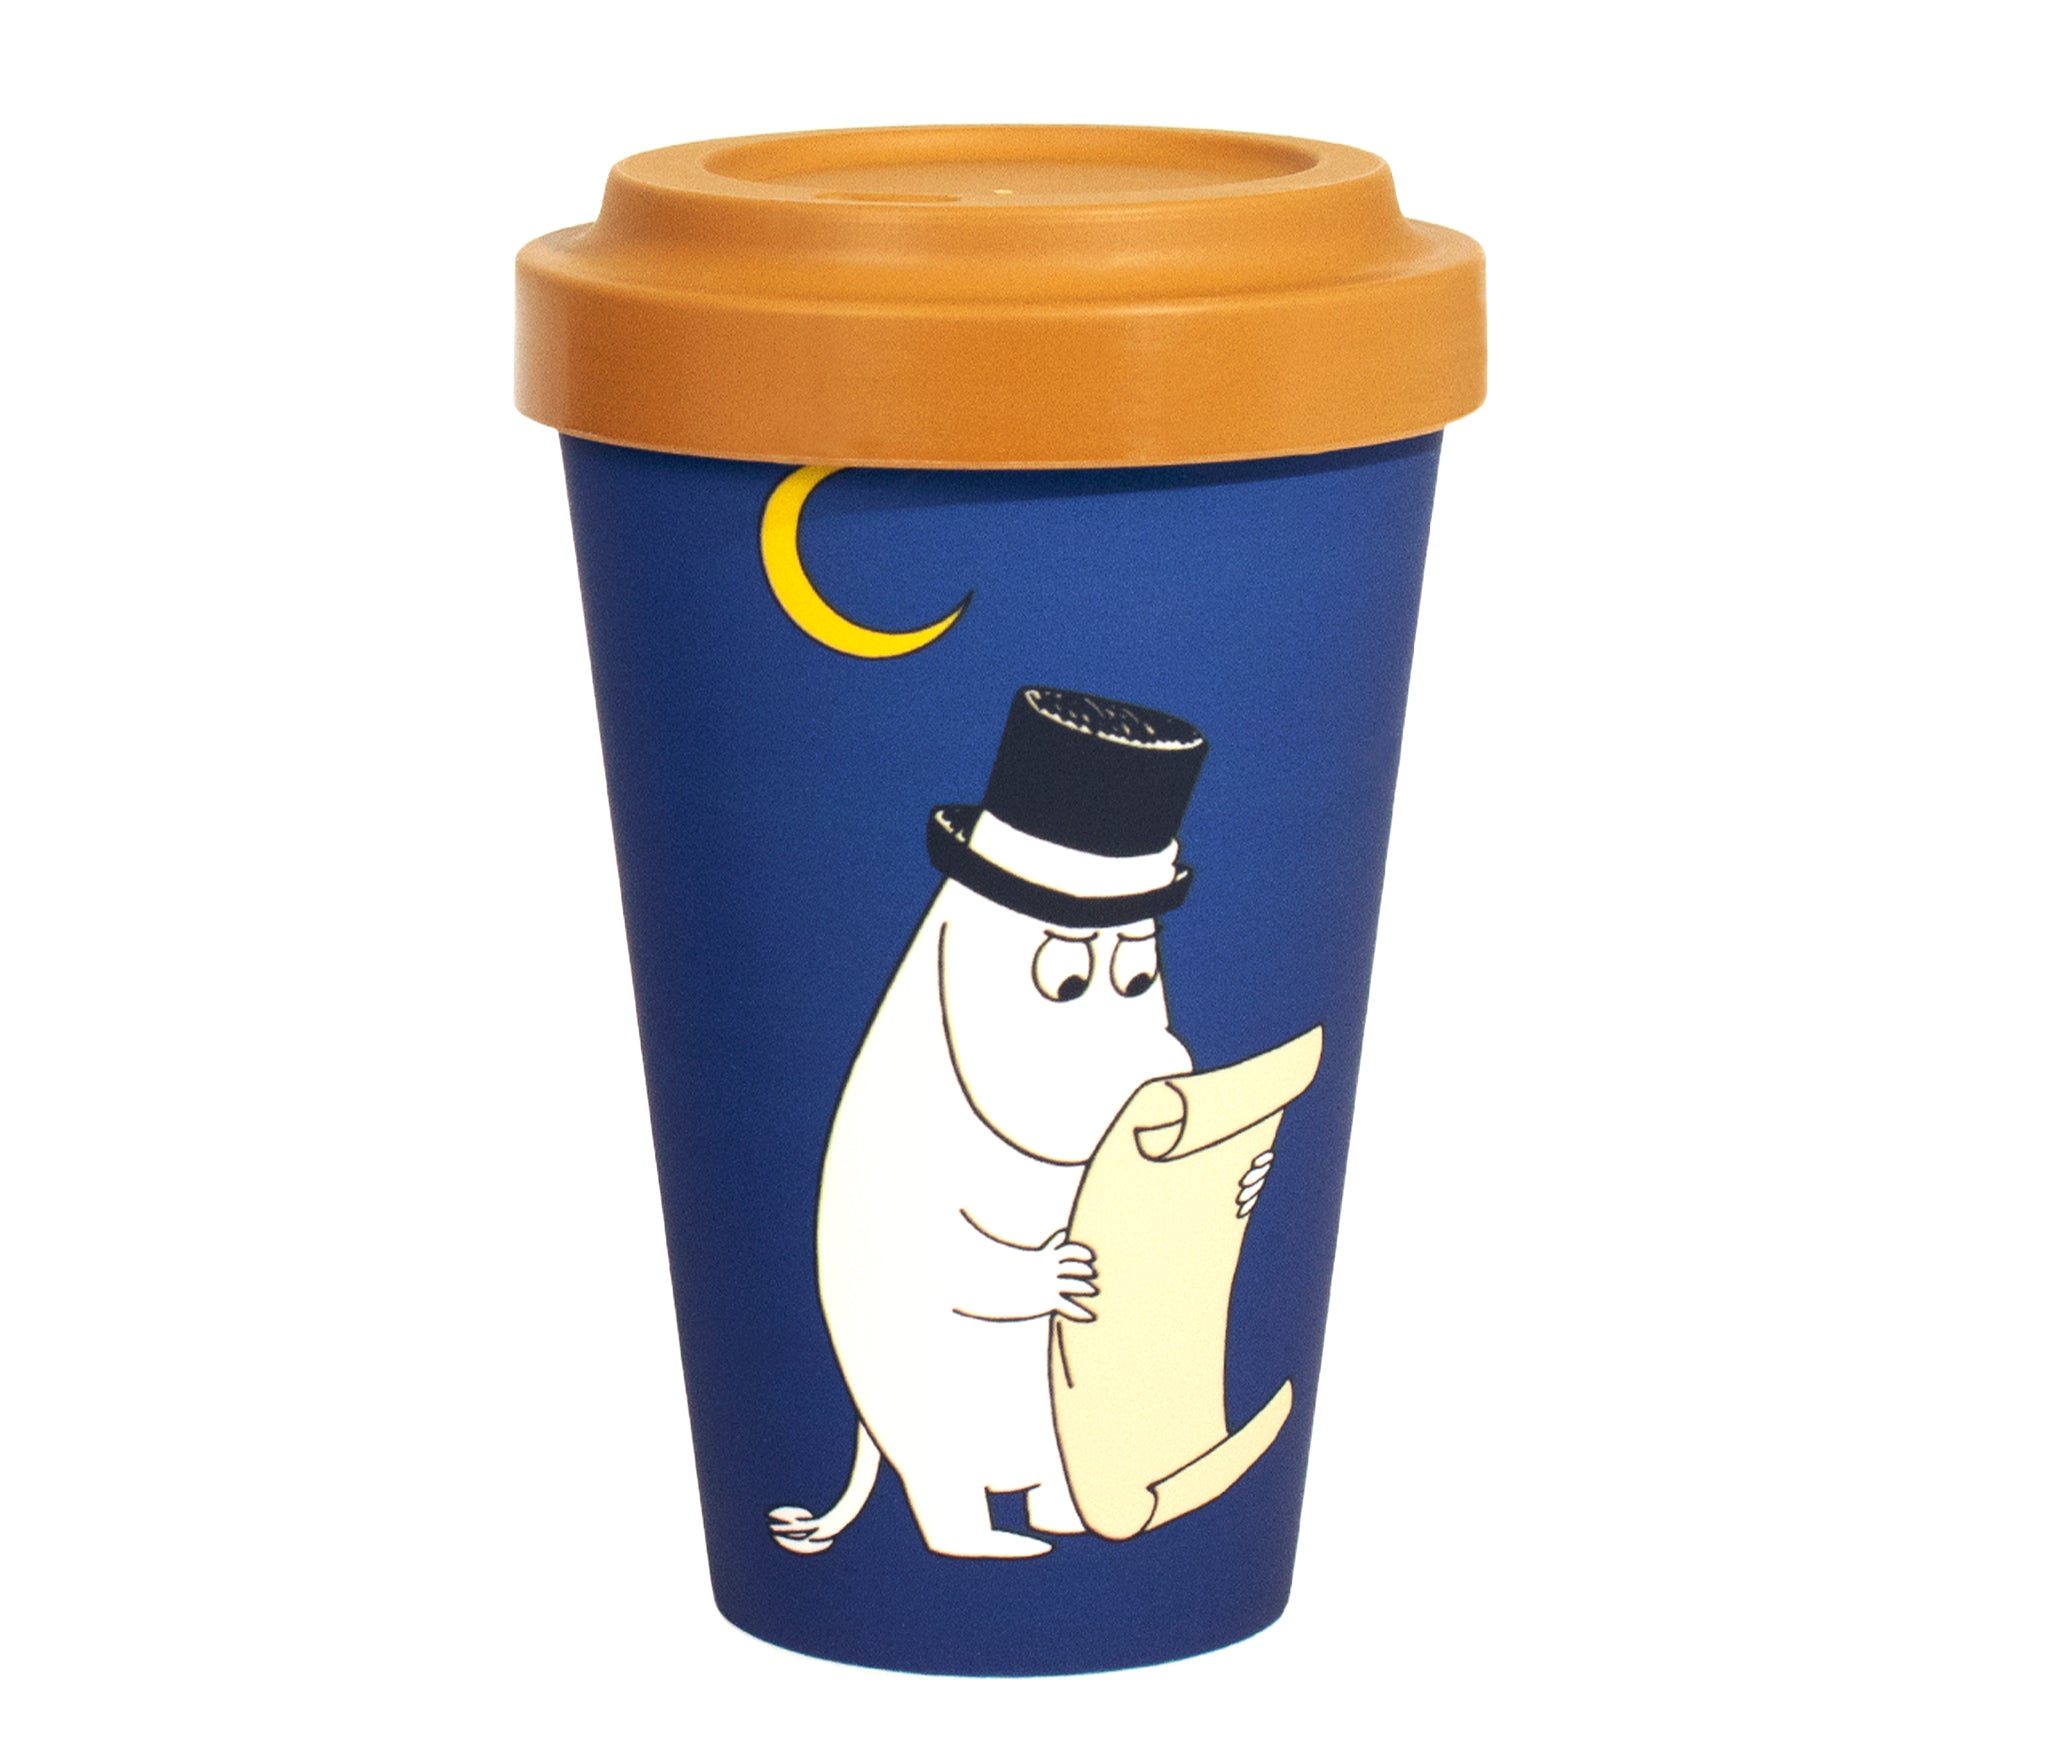 Moominpappa Candle Light Take Away Mug